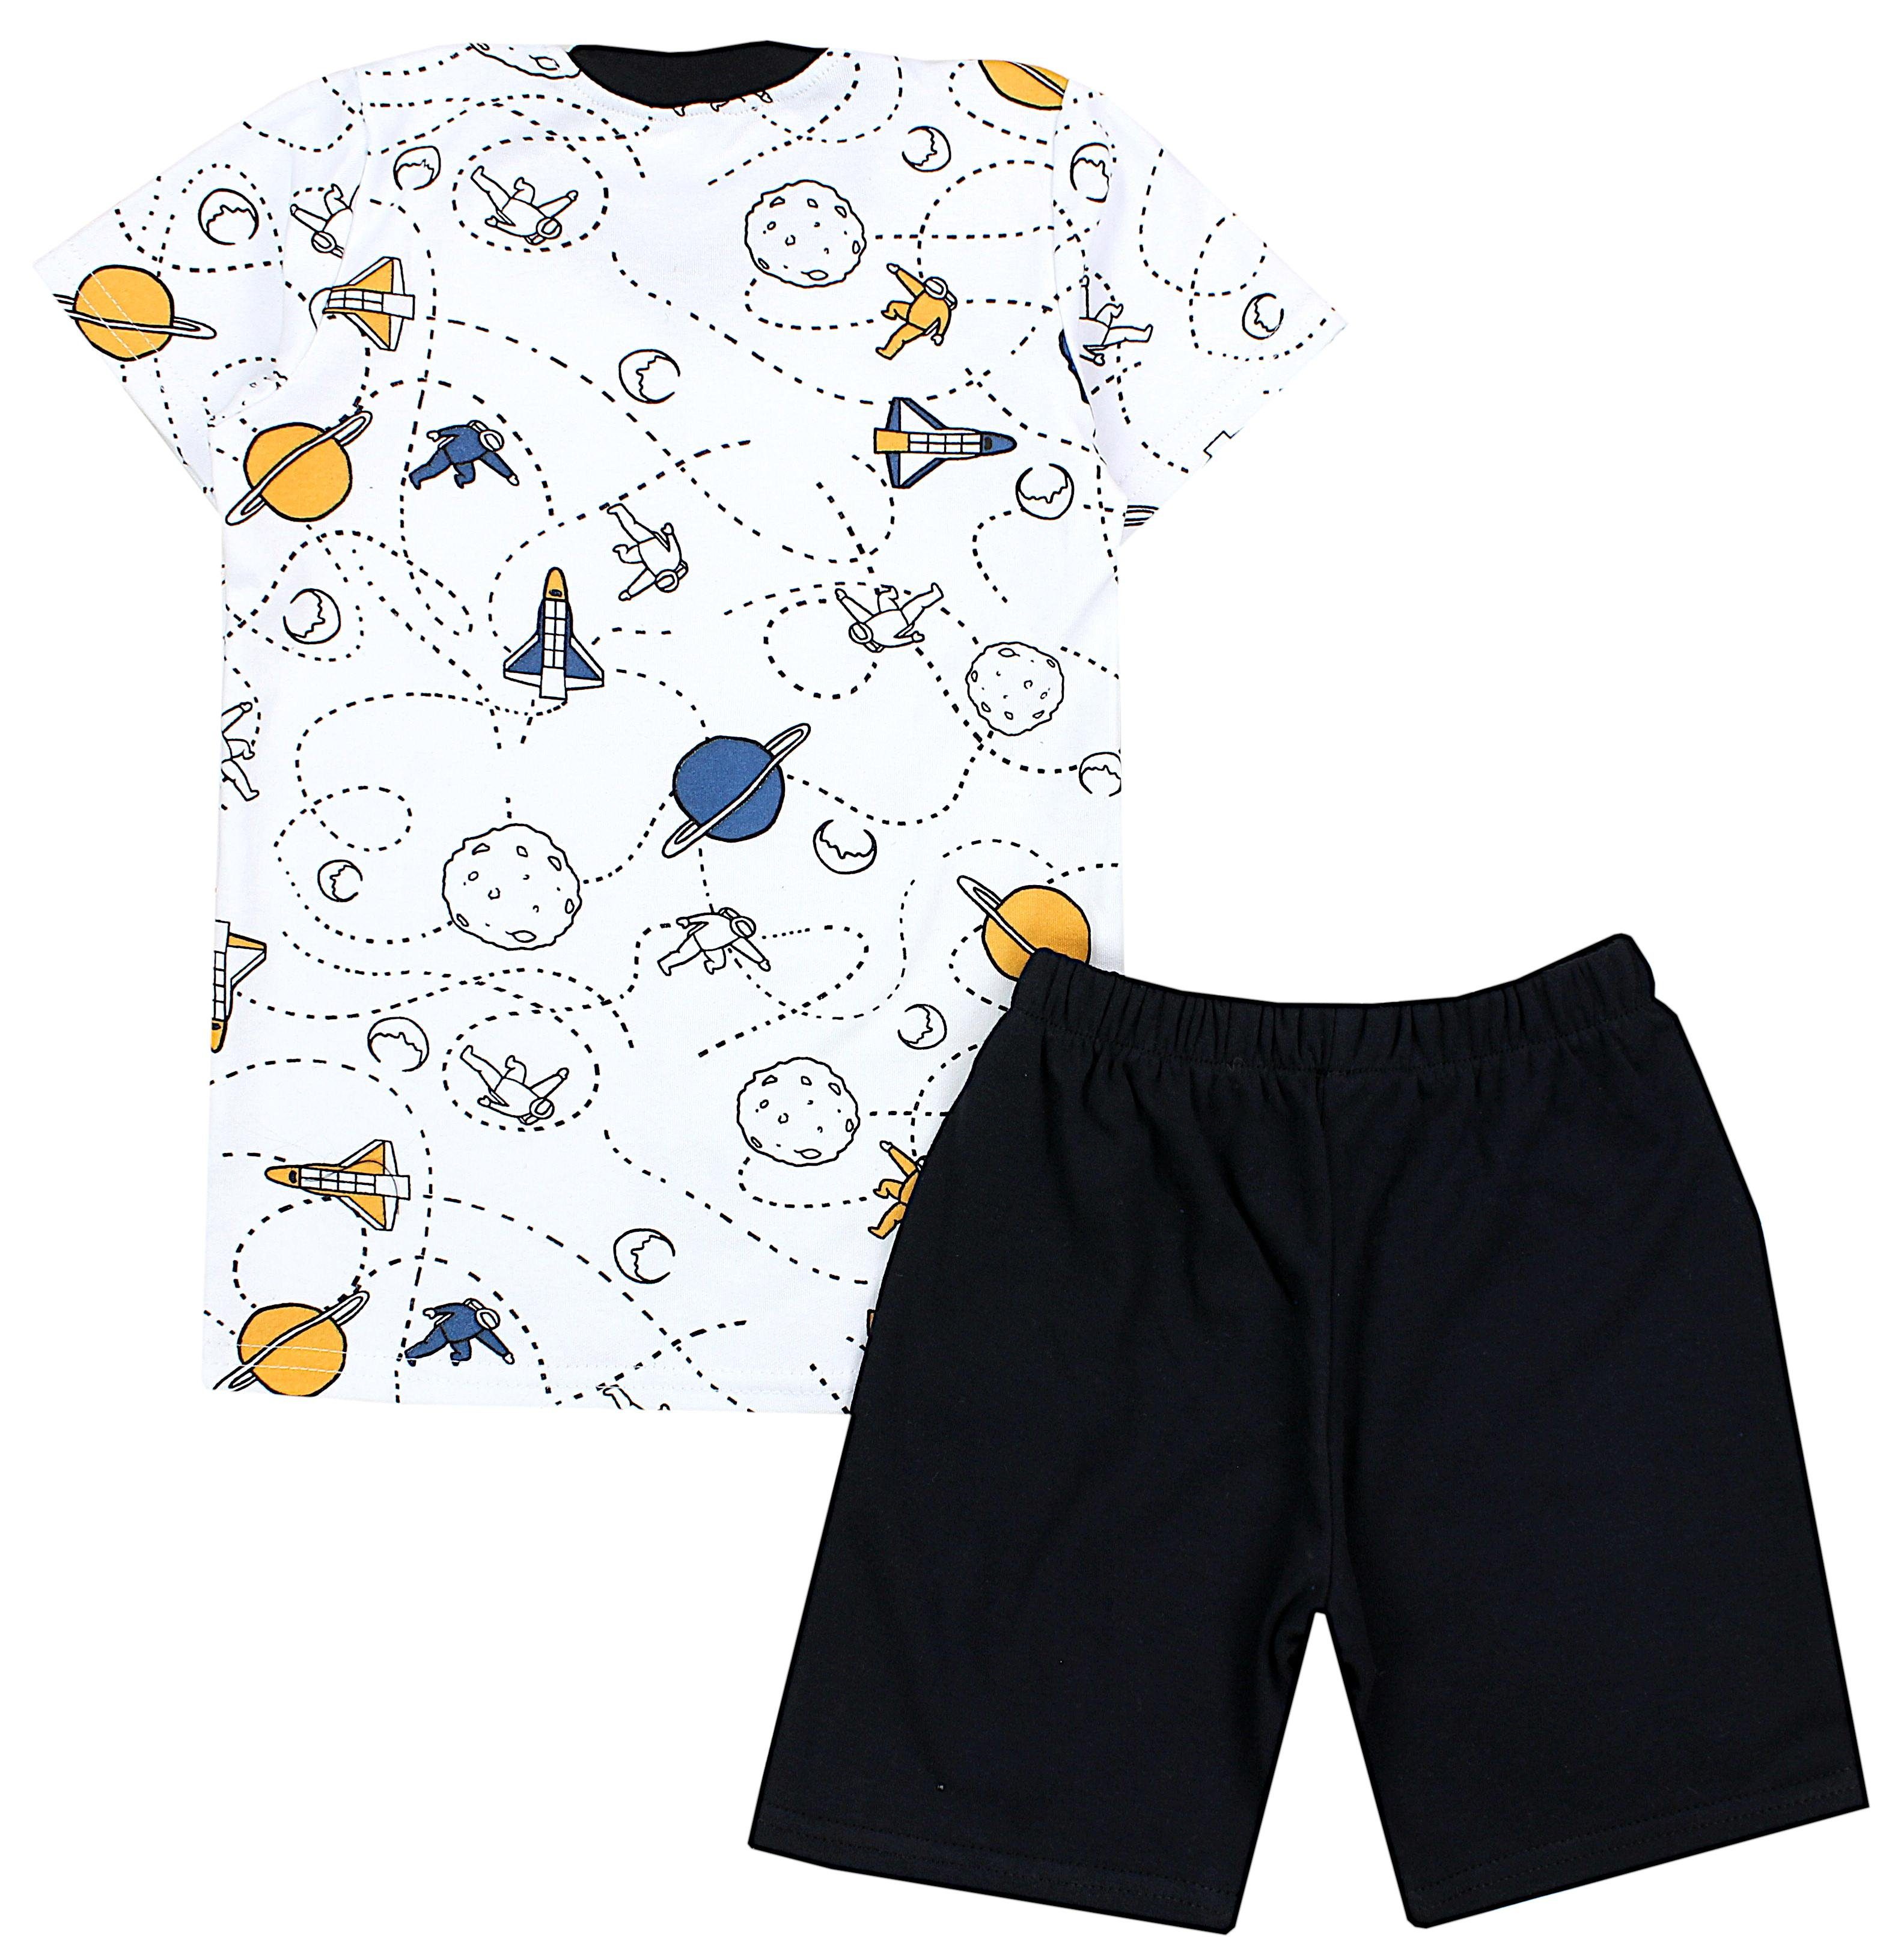 Schwarz / Kinder Schlafanzug Weiß Kurzarm Sommer TupTam Kosmonauten Schlafanzug Pyjama 2-teilig Jungen Set